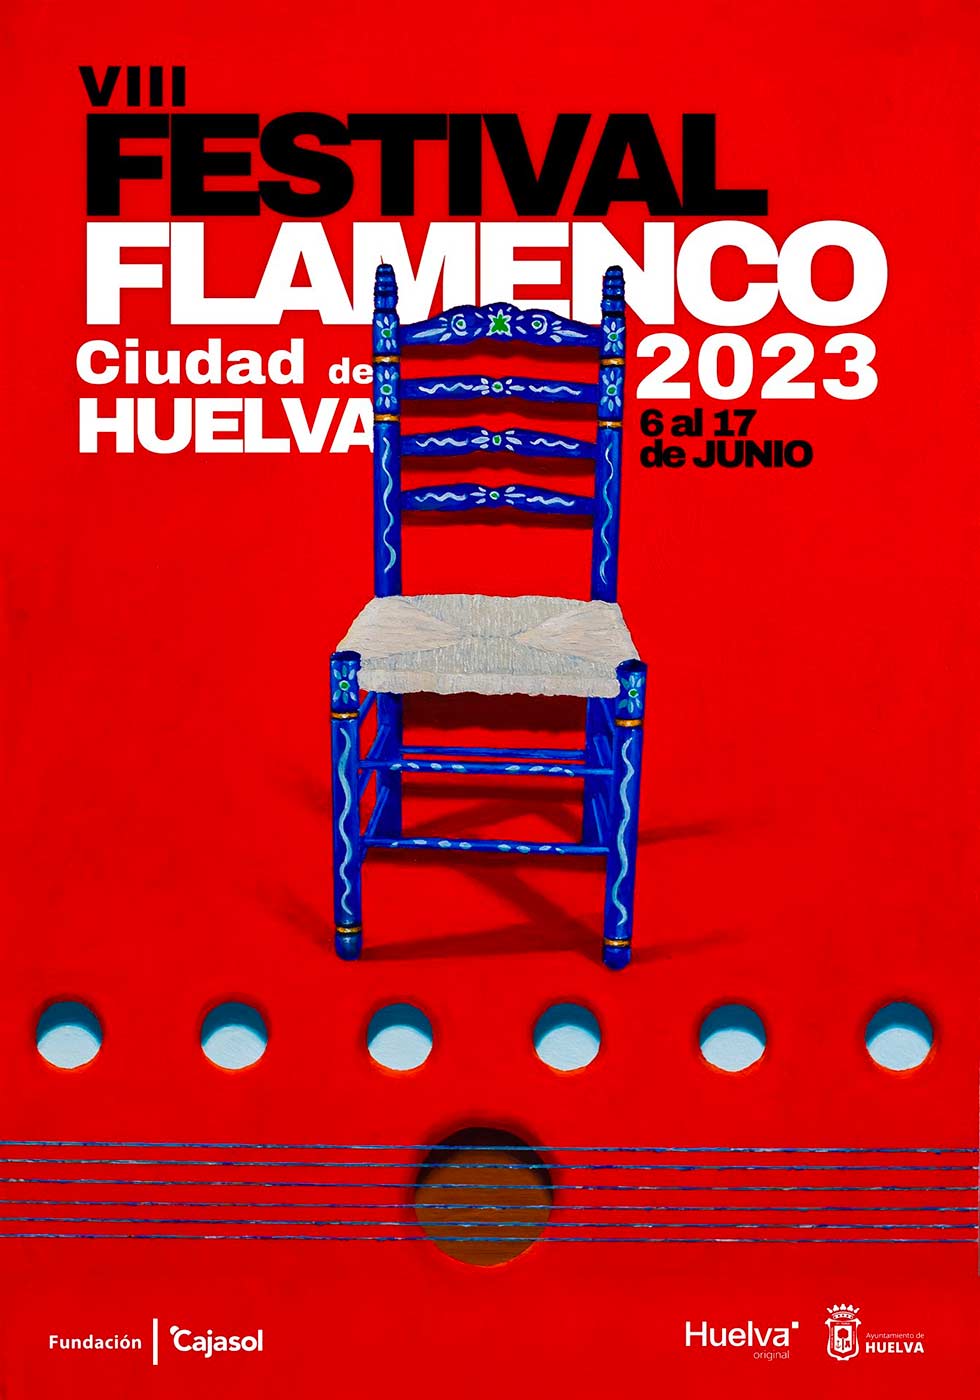 Festival de Flamenco Huelva 2023 Sara Baras Estrella Morente del 6 de junio al 17 2023 Huelva Cartel obra de Mario Marín